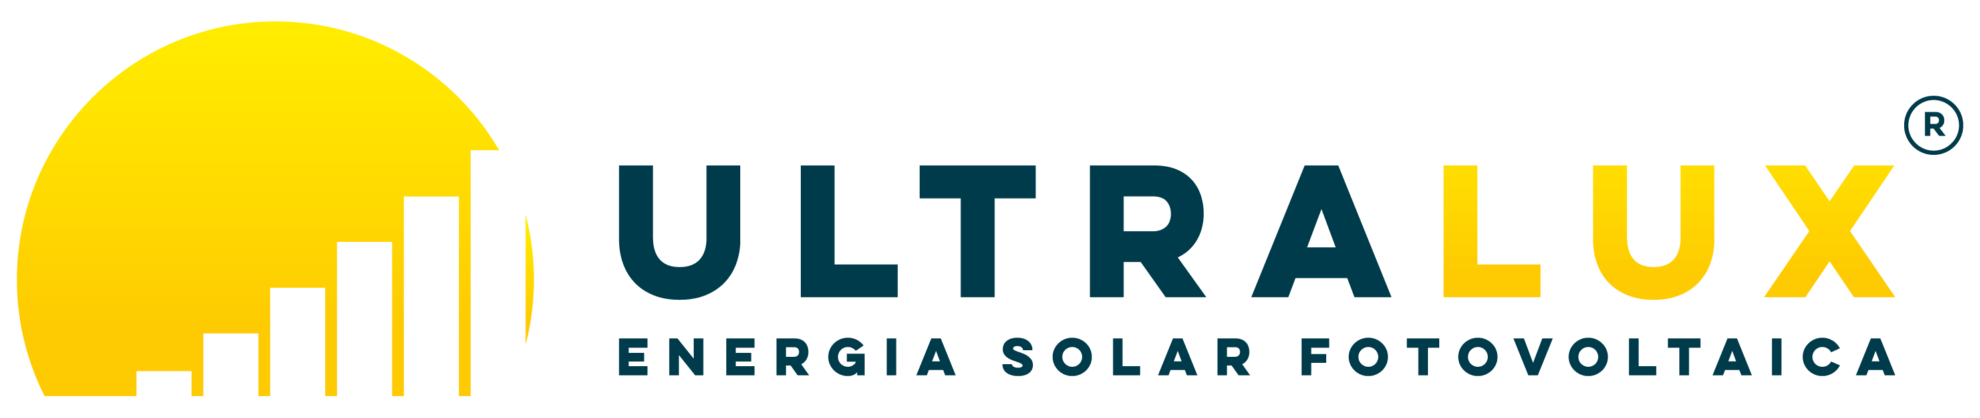 Logomarca Ultralux Energia Solar fotovoltaica com um símbolo representando um sol com um gráfico financeiro dentro demonstrando a evolução patrimonial de quem investe em energia solar fotovoltaica. O gráfico são várias torres que também podem ser entendidas o sol iluminando os prédios da cidade de São Paulo - SP